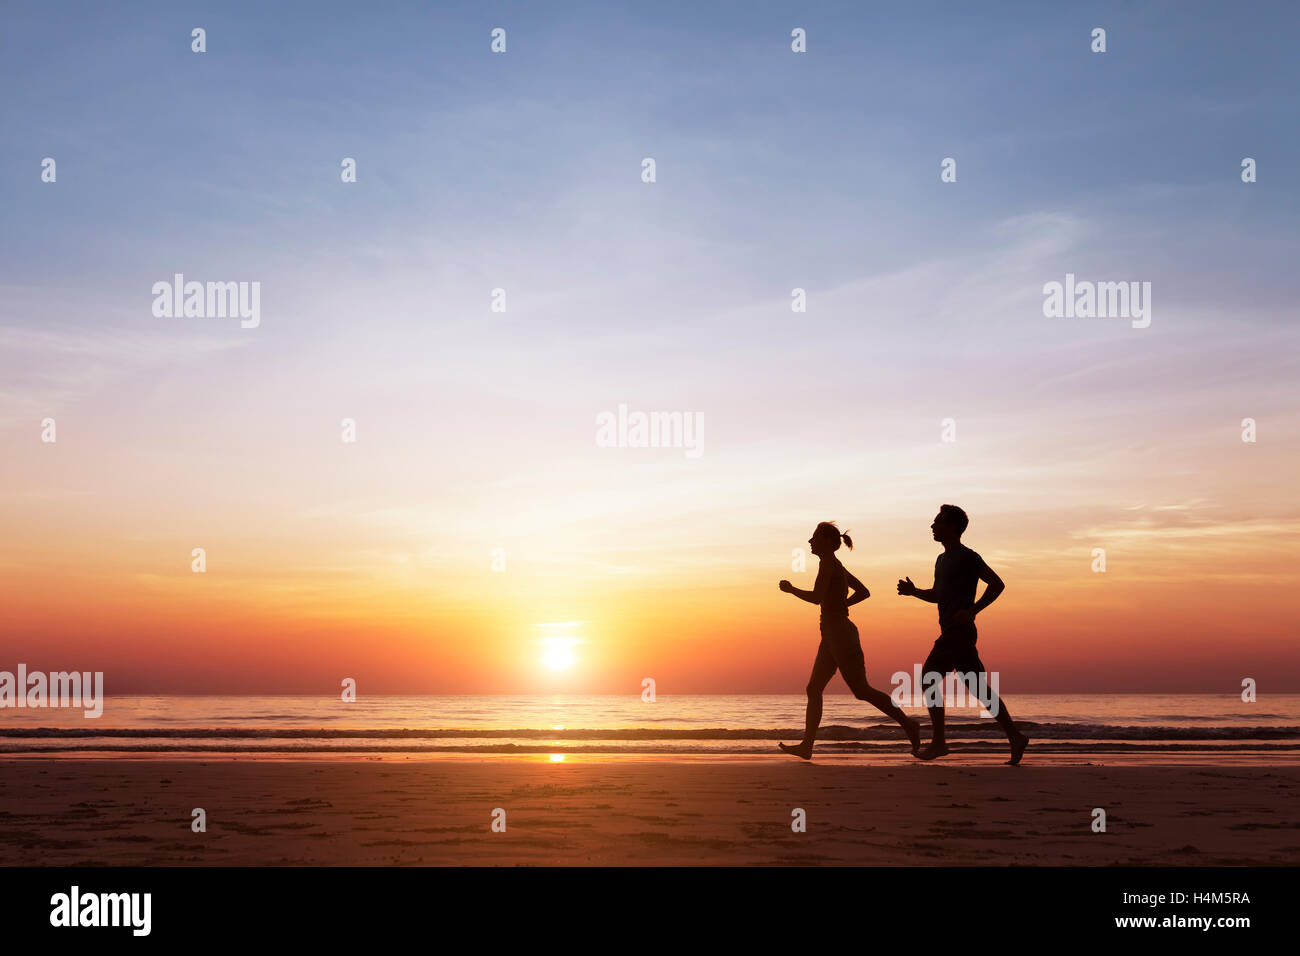 Silhouette de deux coureurs sportive sur la plage au coucher du soleil, concept à propos du mode de vie sain et le bien-être Banque D'Images